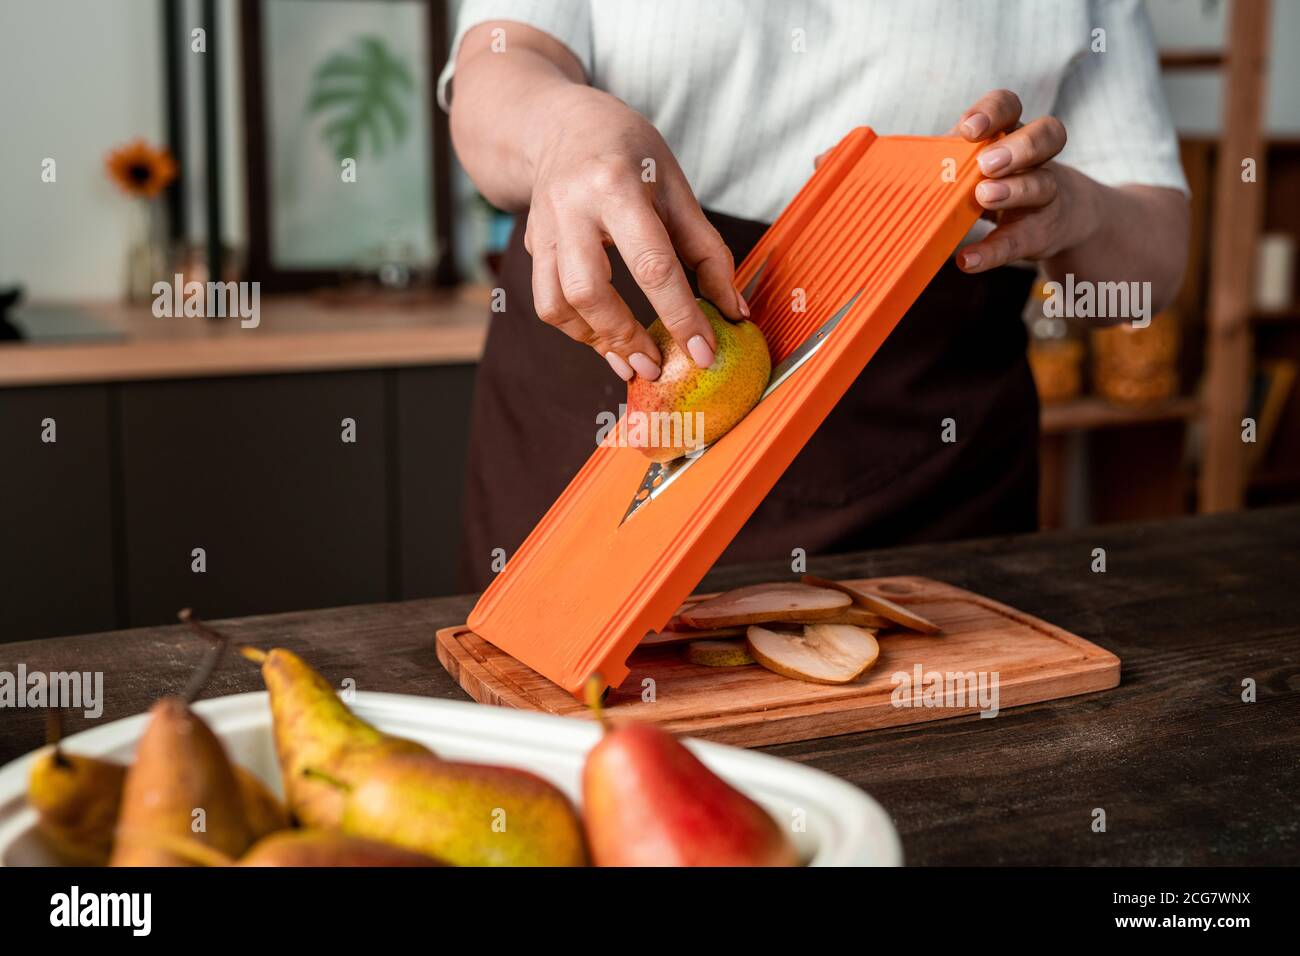 Gros plan d'une femme méconnue qui fait des tranches de poire à l'aide d'un trancheuse à mandoline tout en cuisinant dans la cuisine Banque D'Images